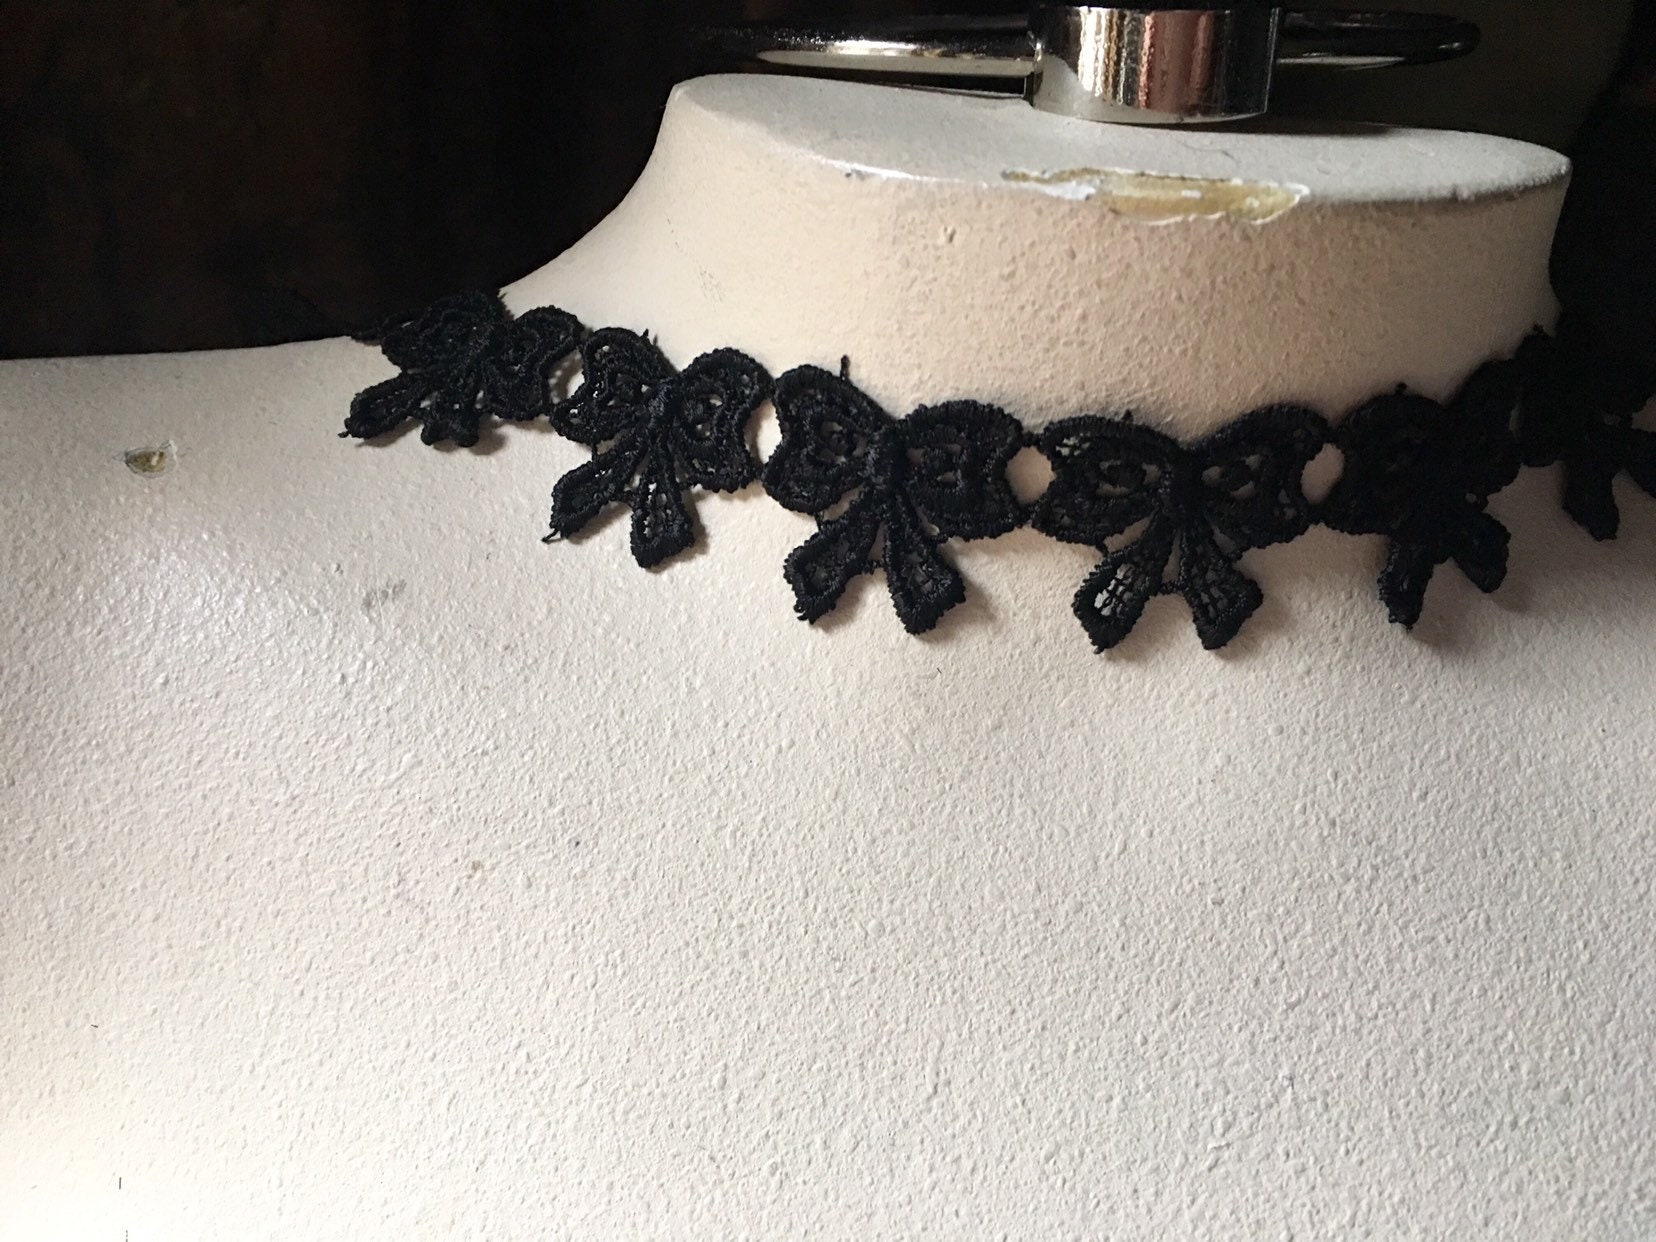 Embroidered Lace Applique Black Floral Venice Lace